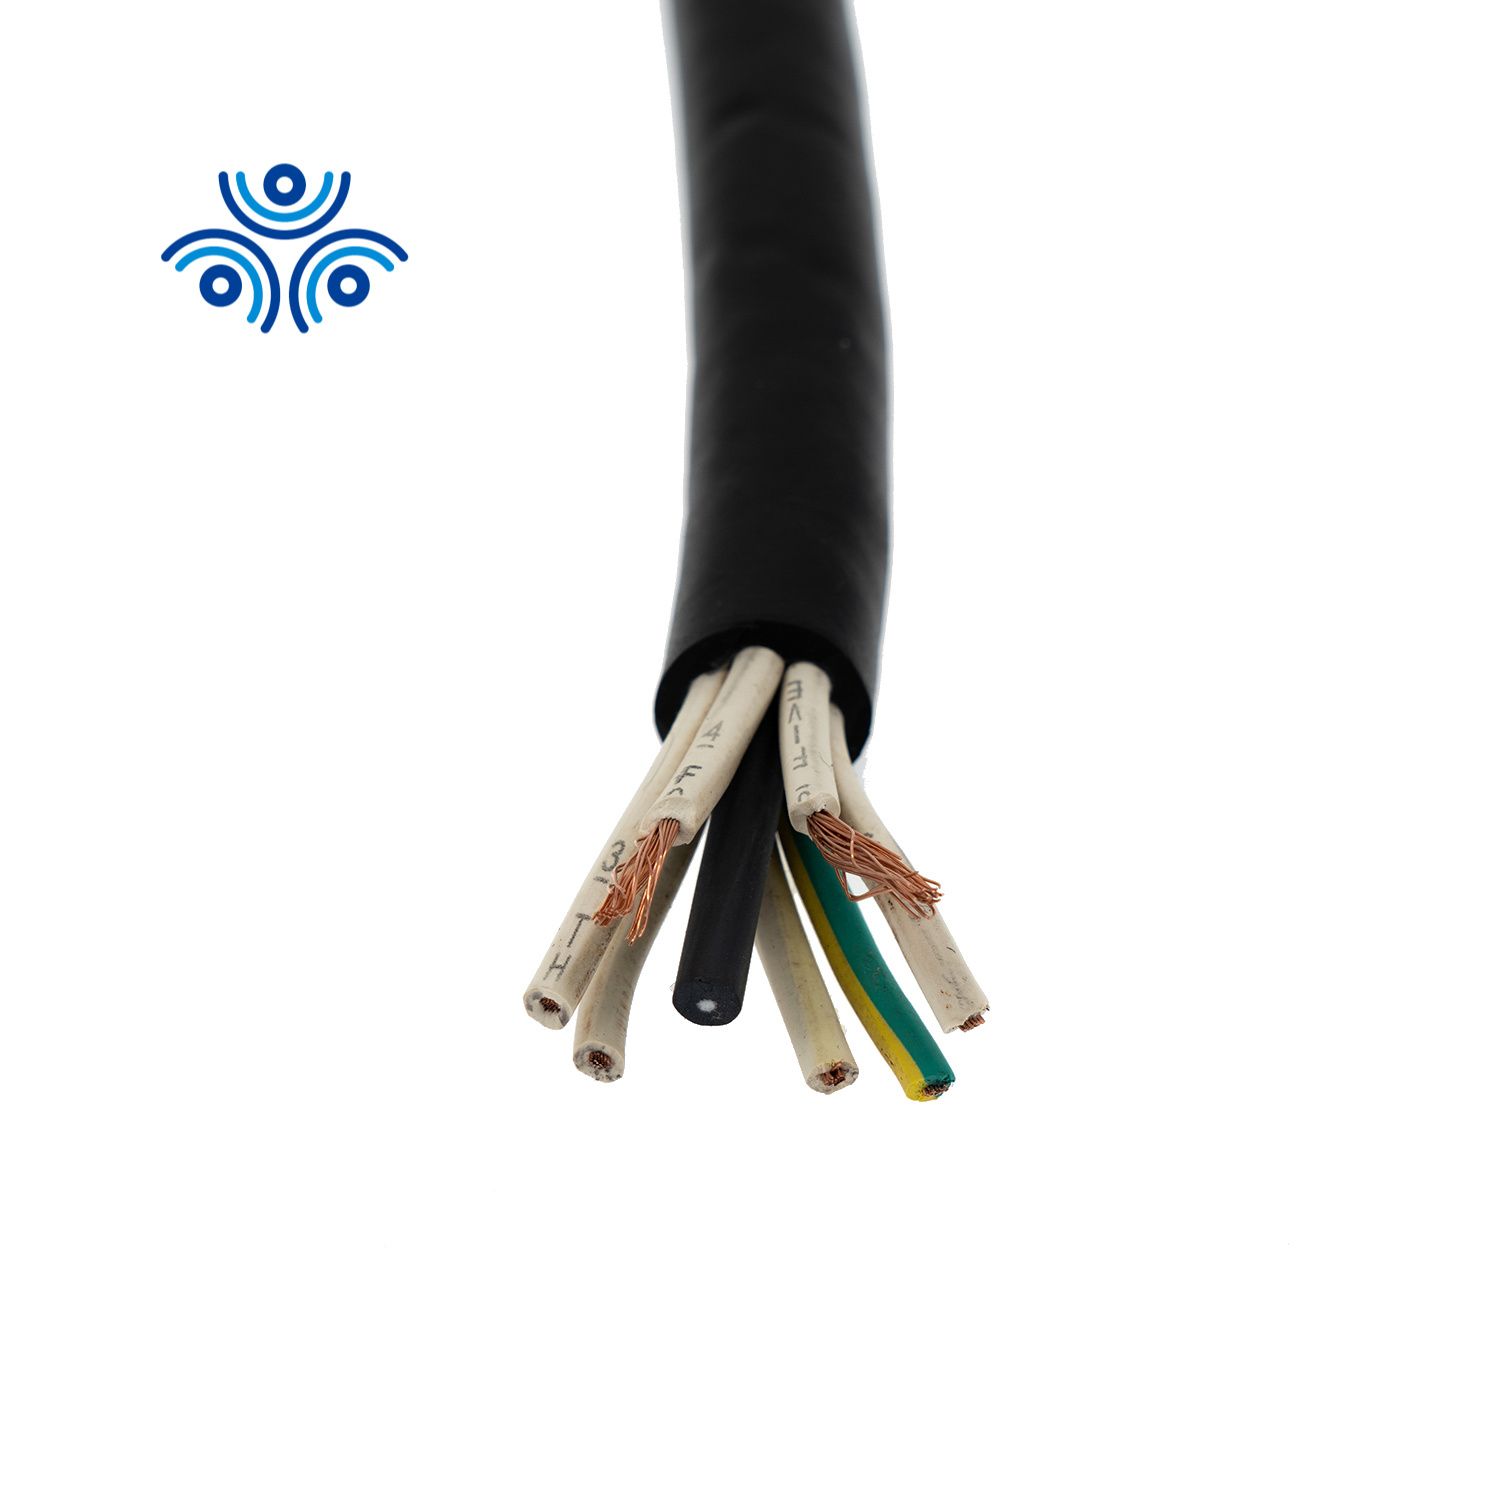 
                Câble flexible renforcé avec gaine en caoutchouc pour service intensif Soow Sjoow 14 12 8 6 AWG
            